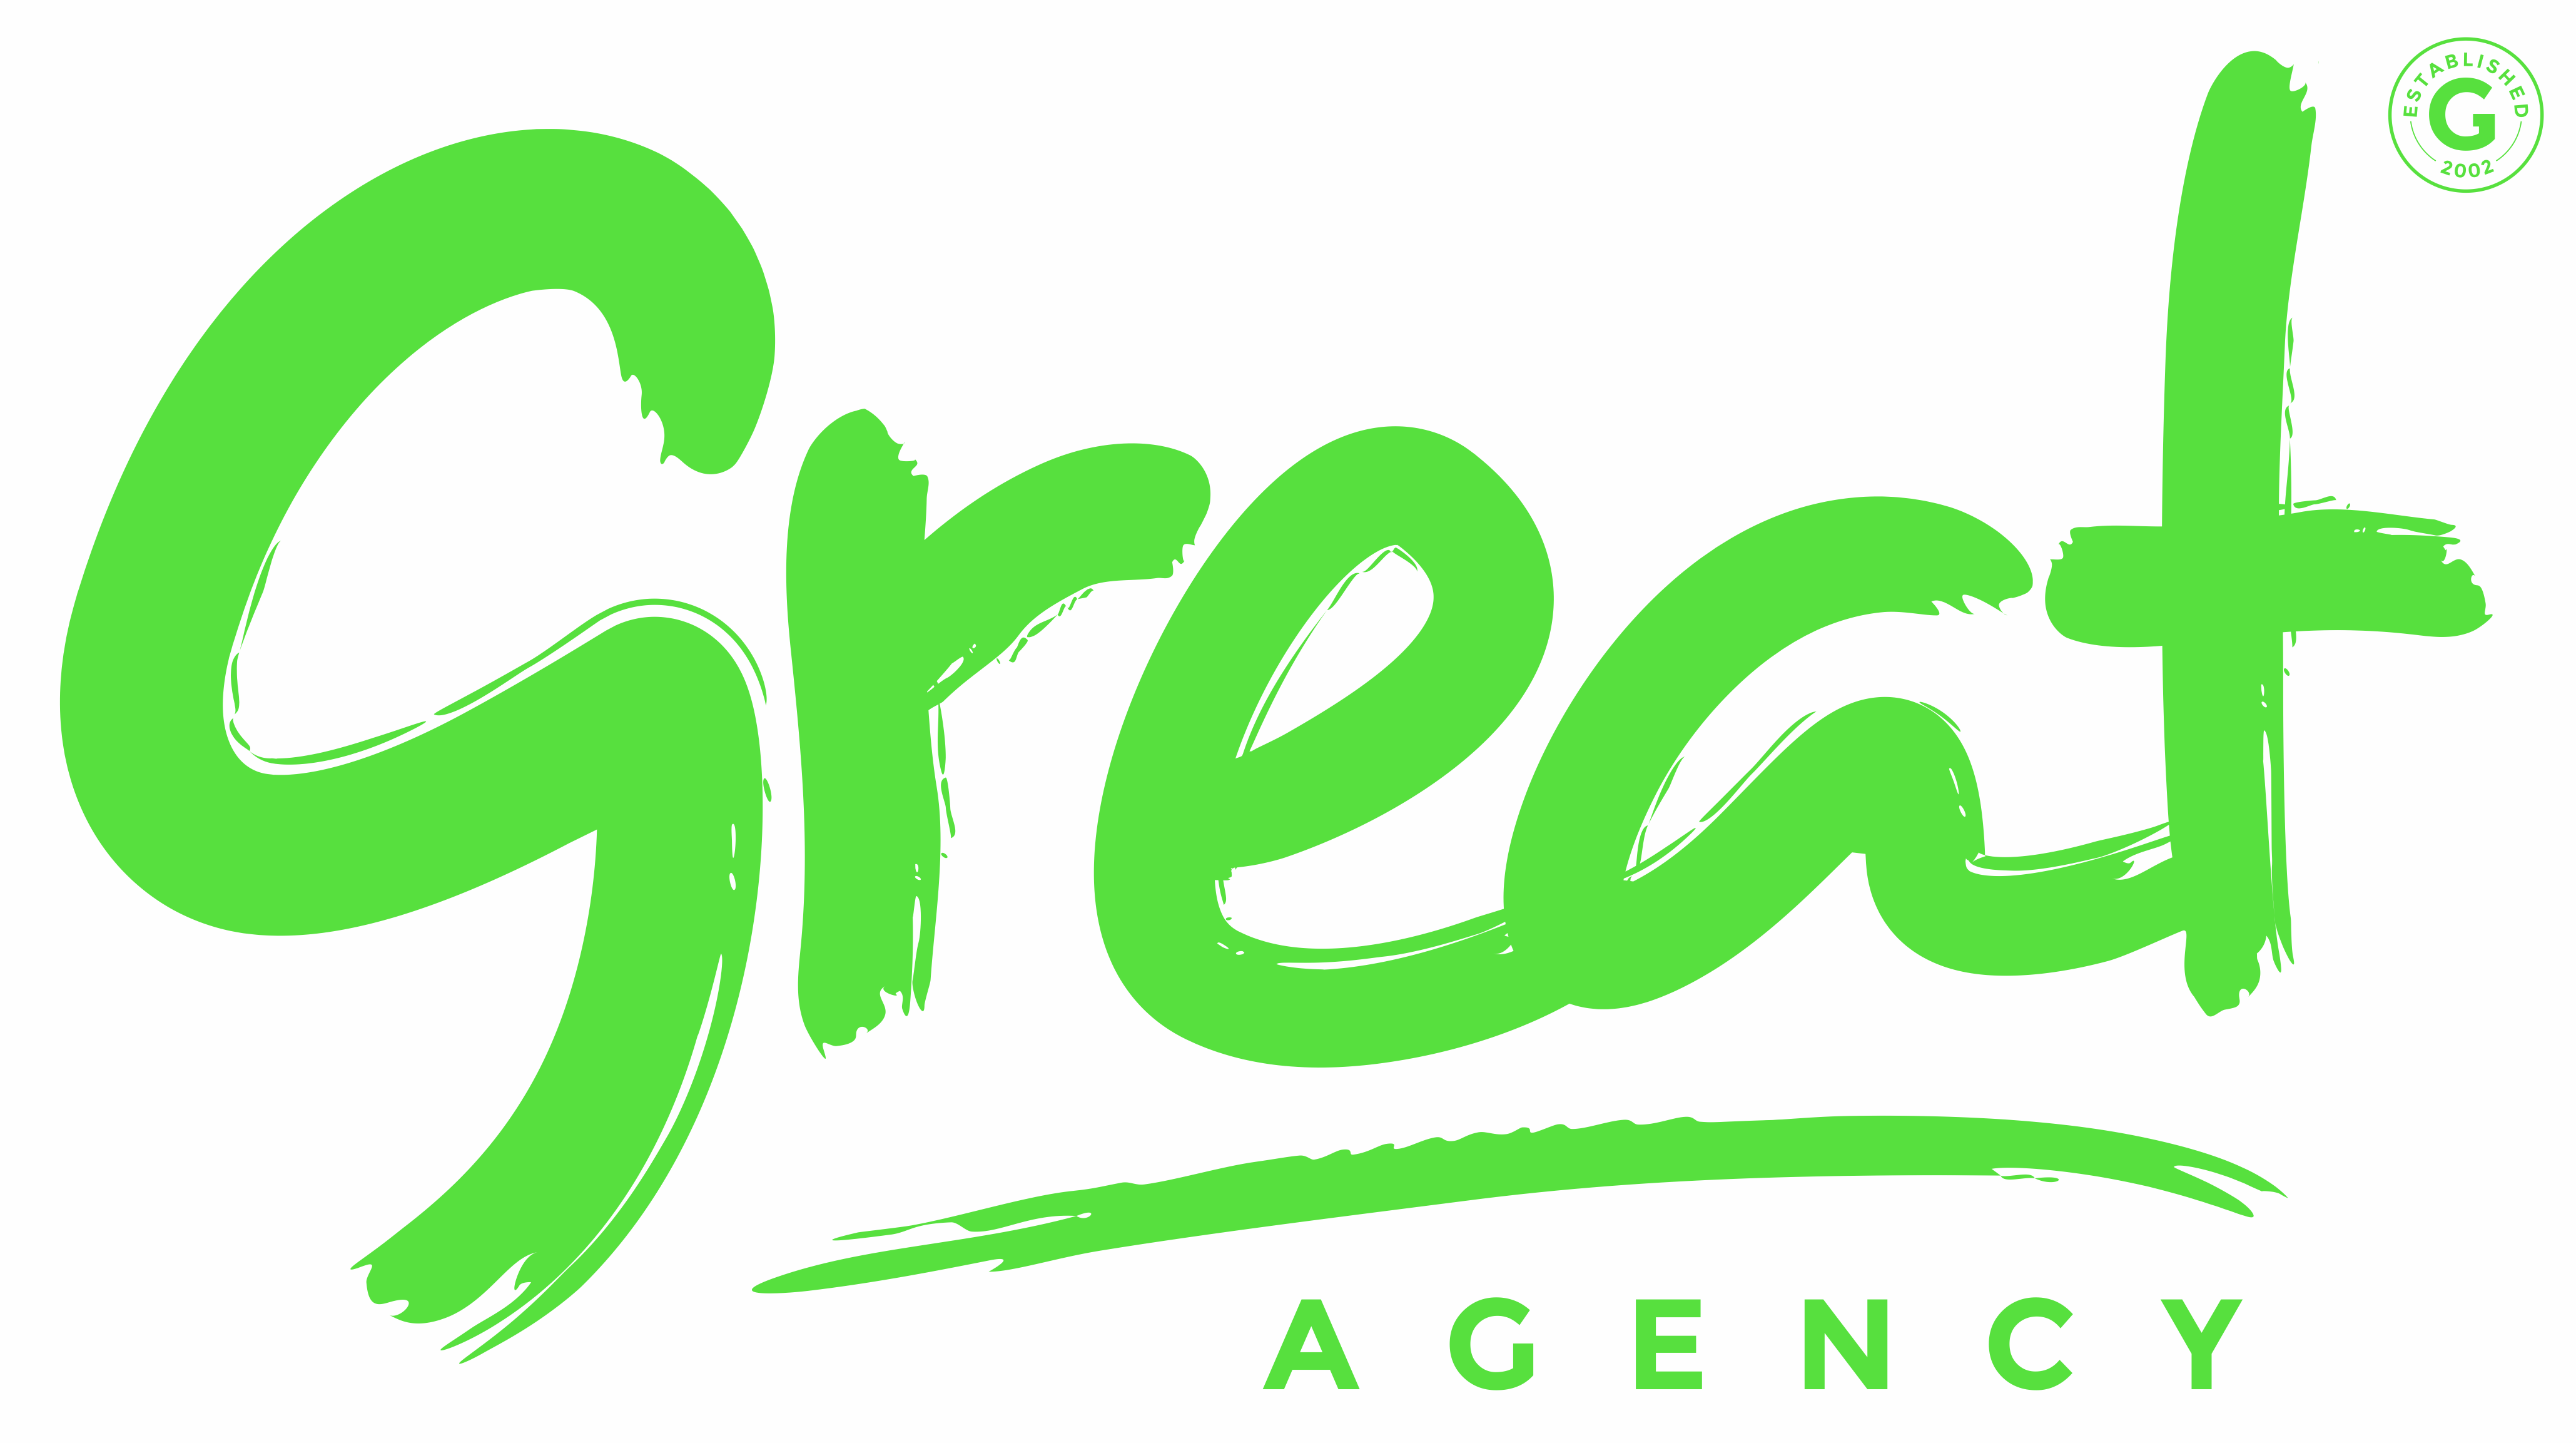 Great Agency 